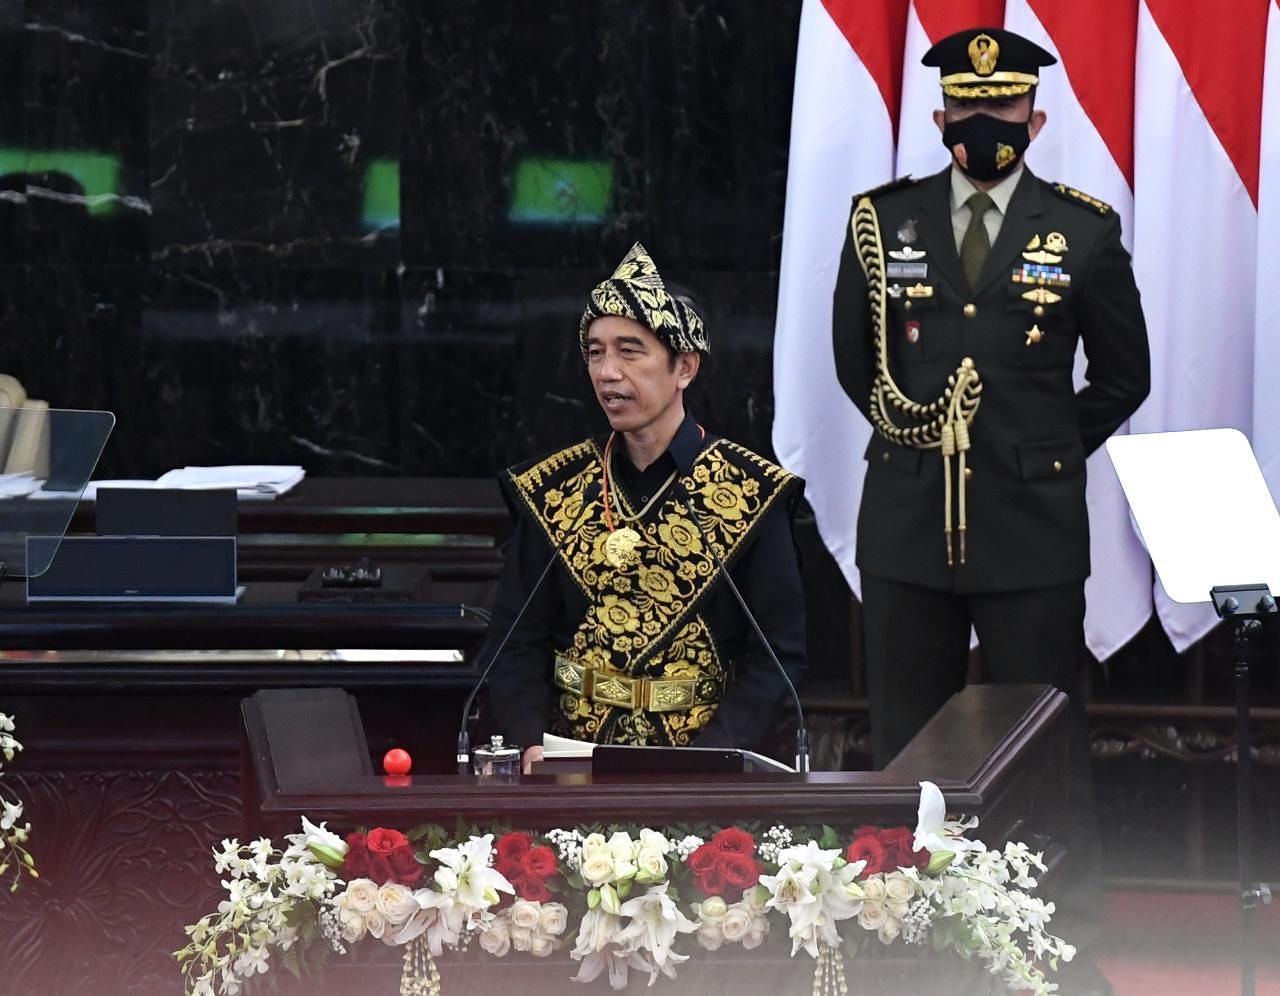 Hari ini, Presiden Jokowi Akan Sampaikan Pidato Kenegaraan di Gedung Nusantara 